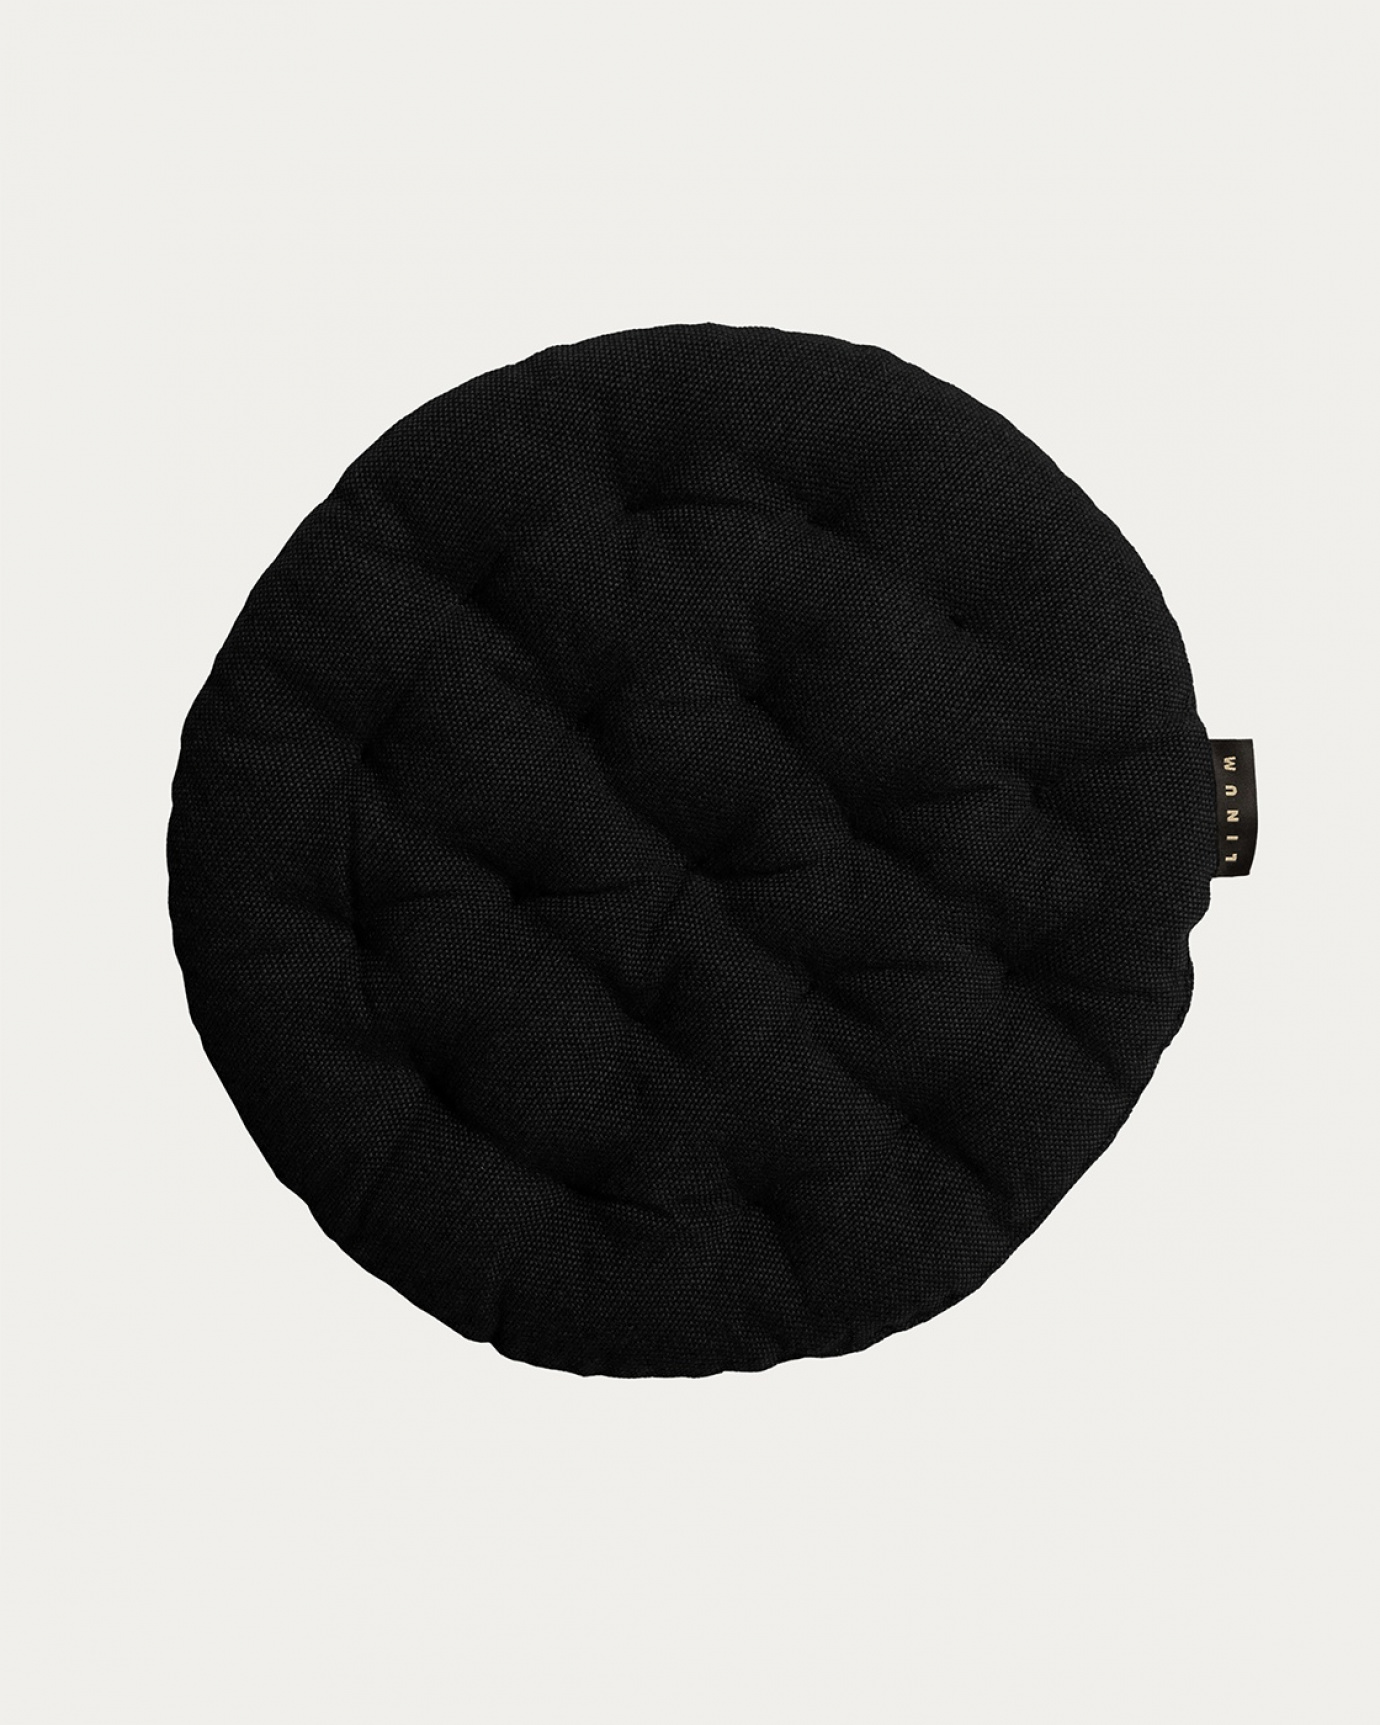 Produktbild schwarz PEPPER Sitzkissen aus weicher Baumwolle mit Füllung aus recyceltem Polyester von LINUM DESIGN. Größe ø37 cm.